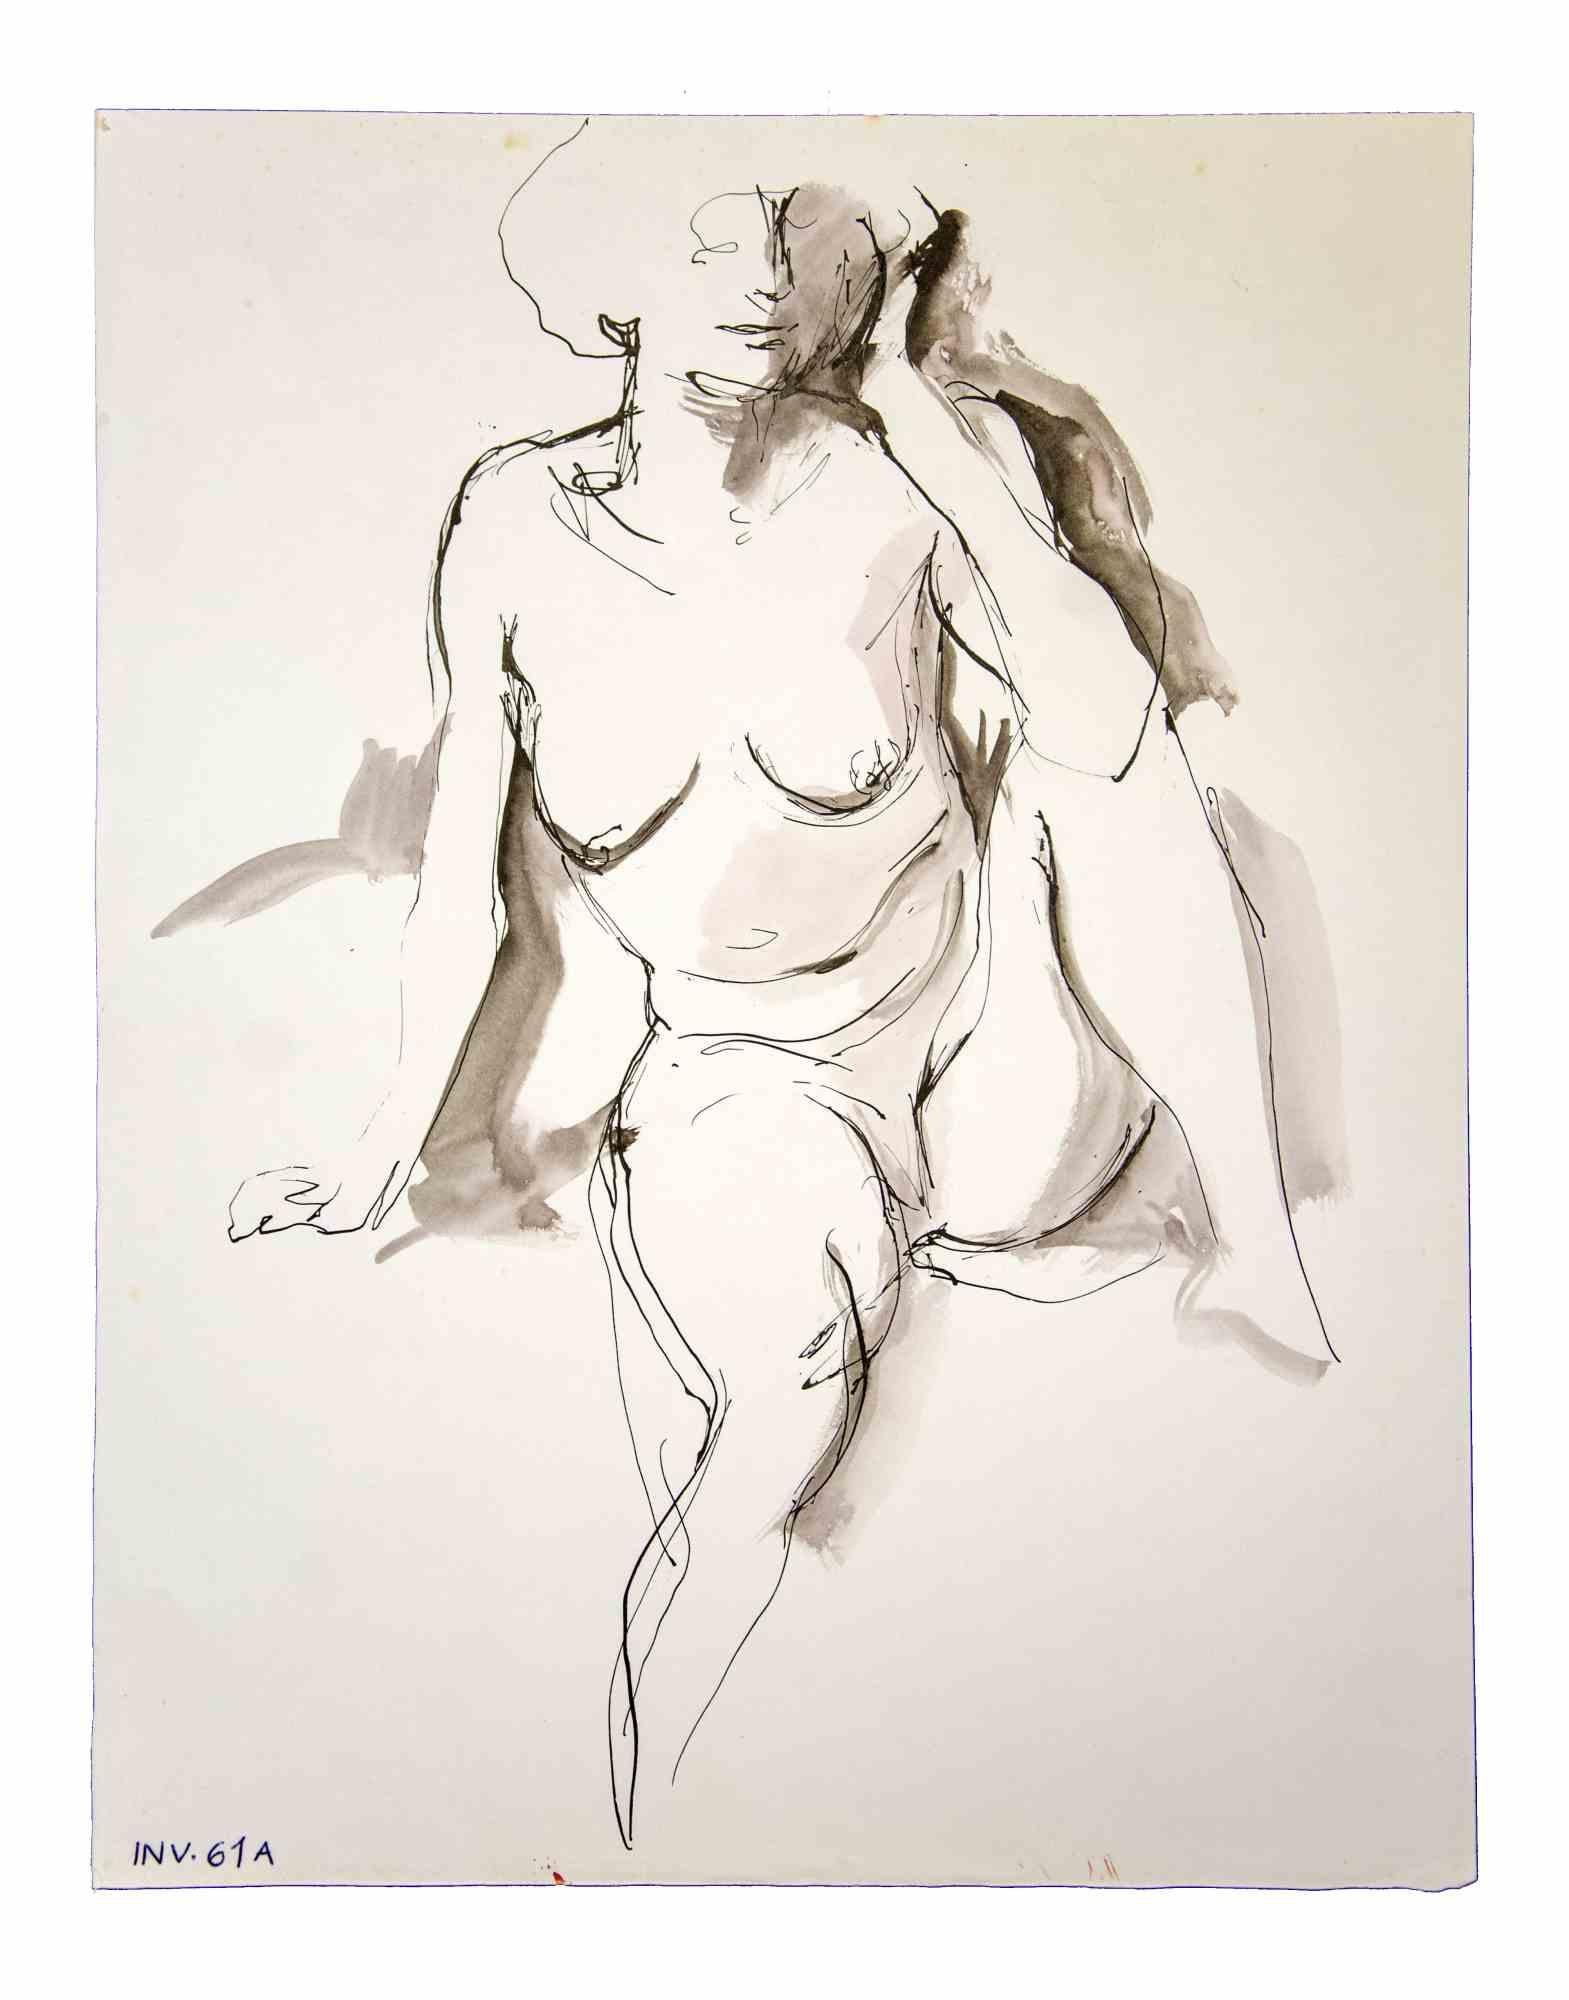 Nude ist ein Originalkunstwerk, das in den 1970er Jahren von dem italienischen zeitgenössischen Künstler  Leo Guida  (1992 - 2017).

Originalzeichnungen in Porzellantinte und Aquarell auf Papier.

Guter Zustand, aber gealtert.

Das Kunstwerk wird